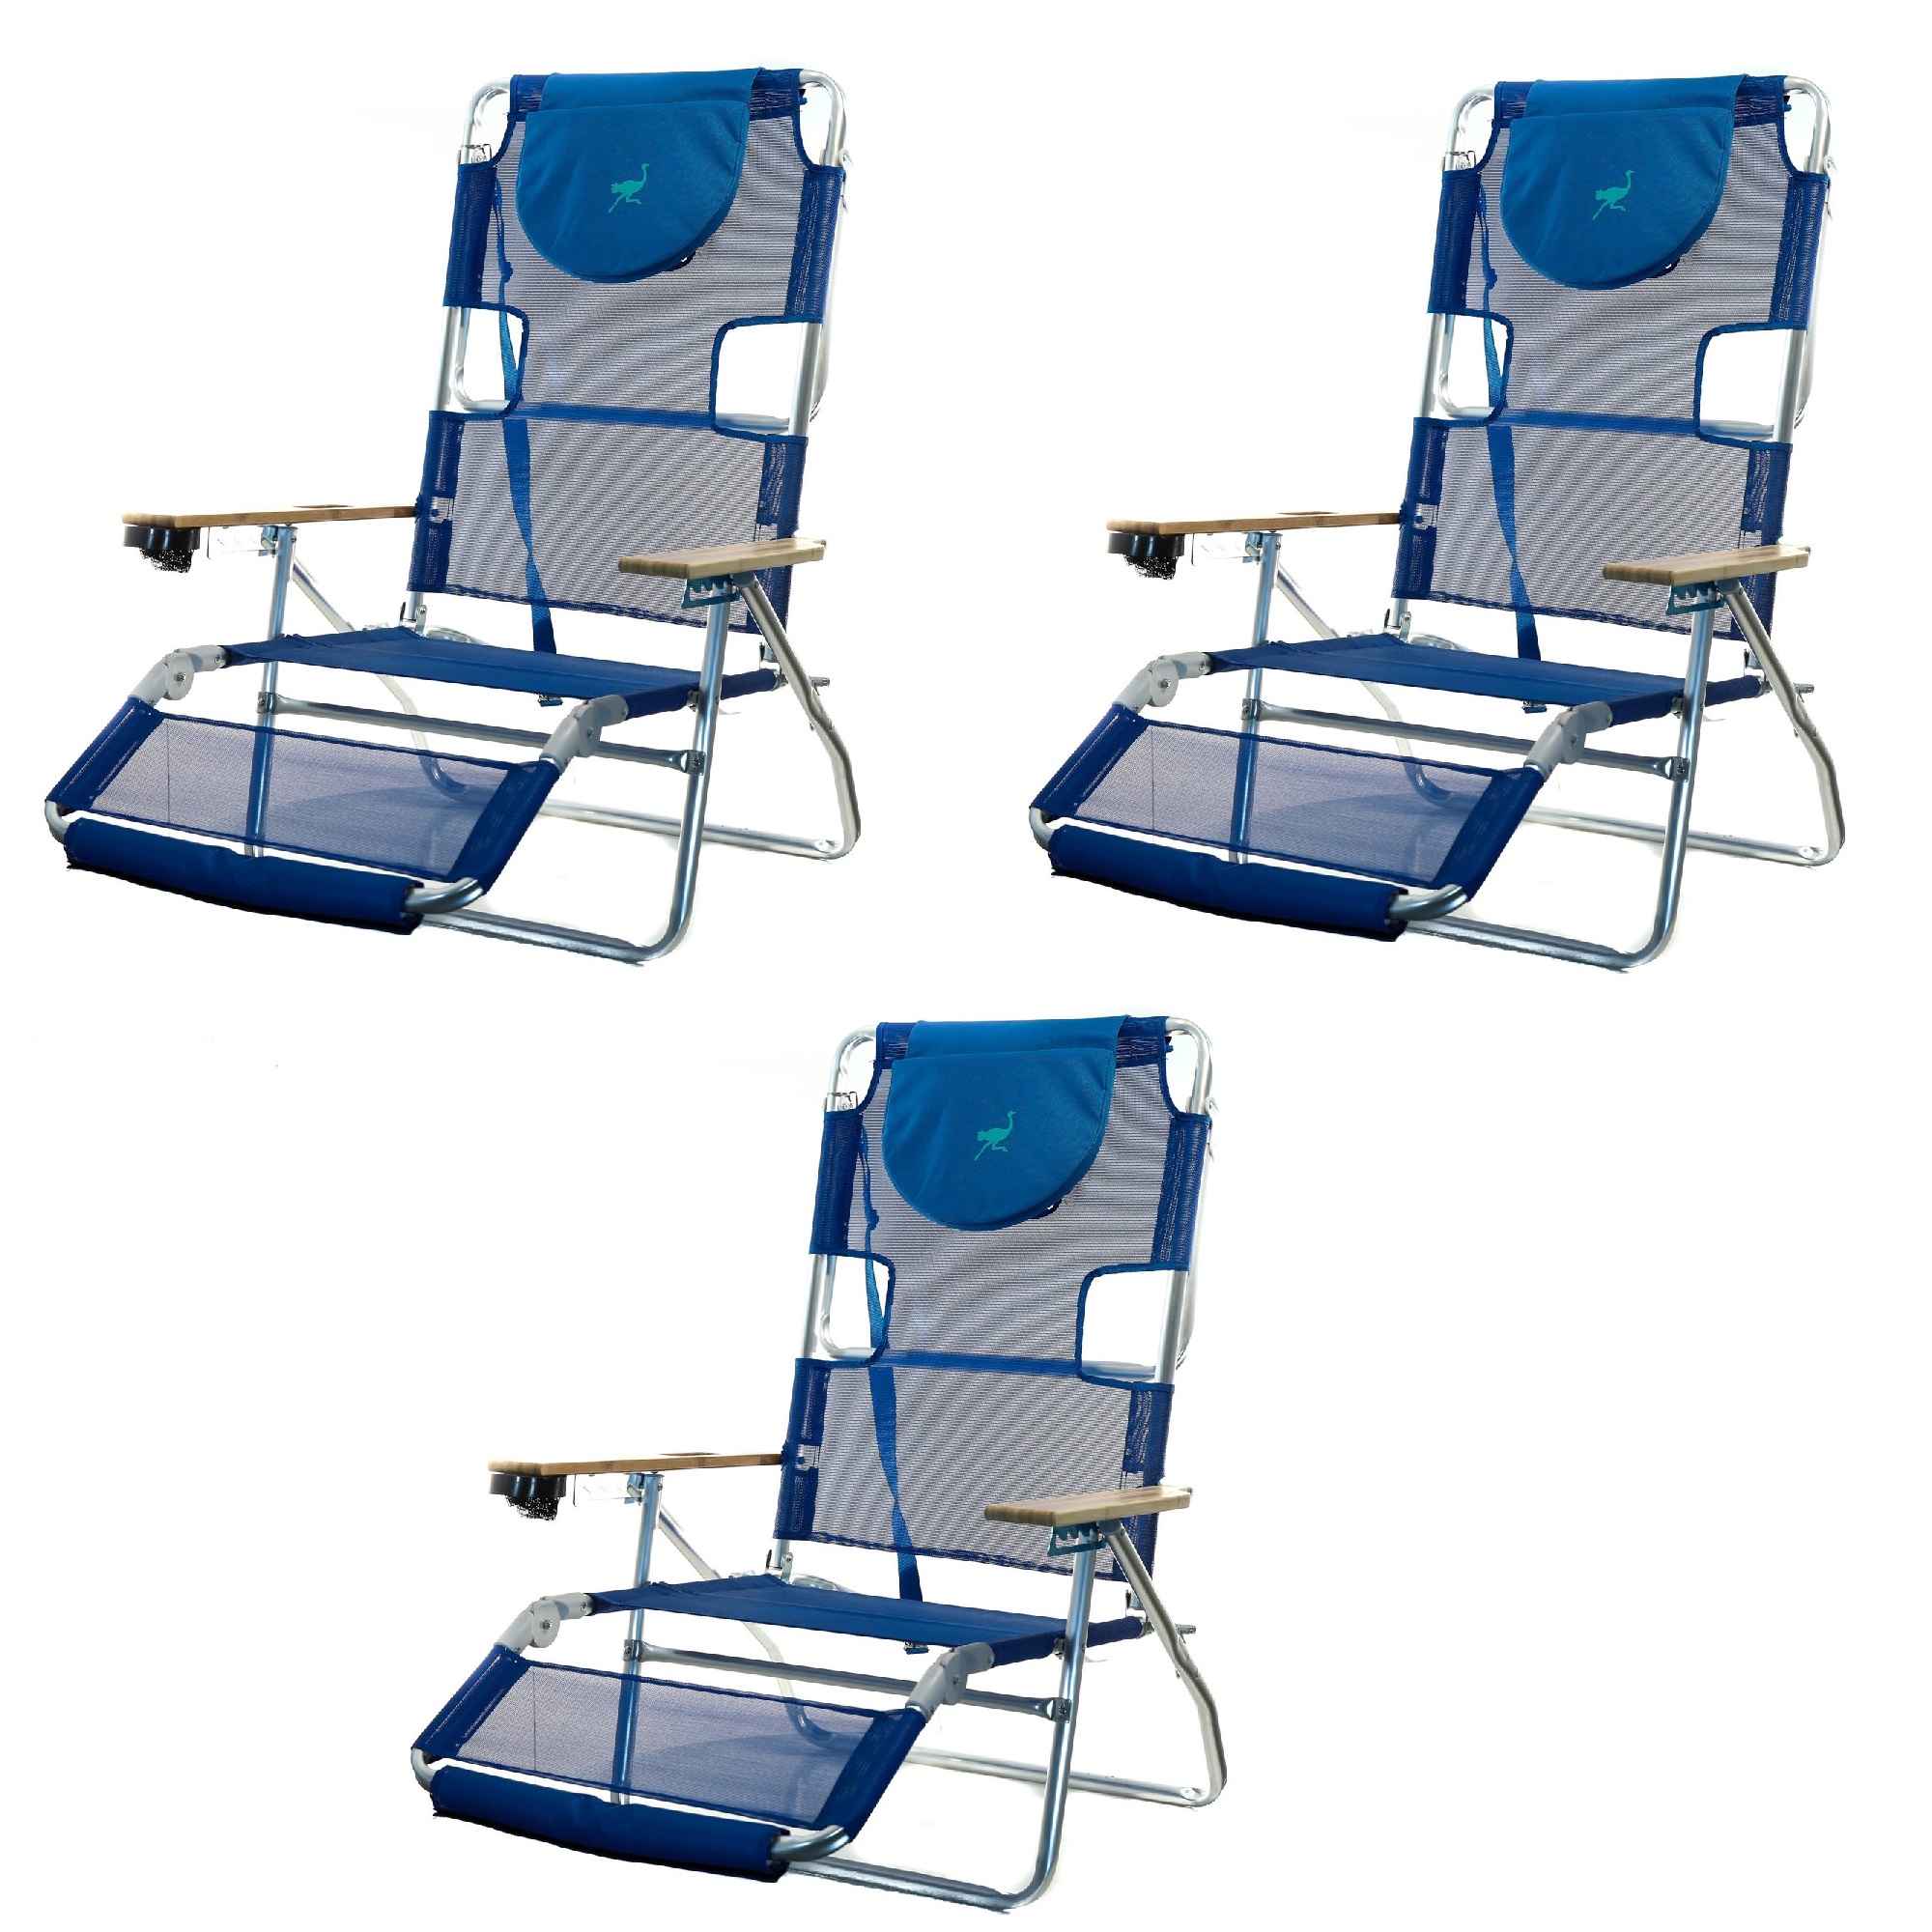 Modern Ostrich Beach Chair Australia for Large Space